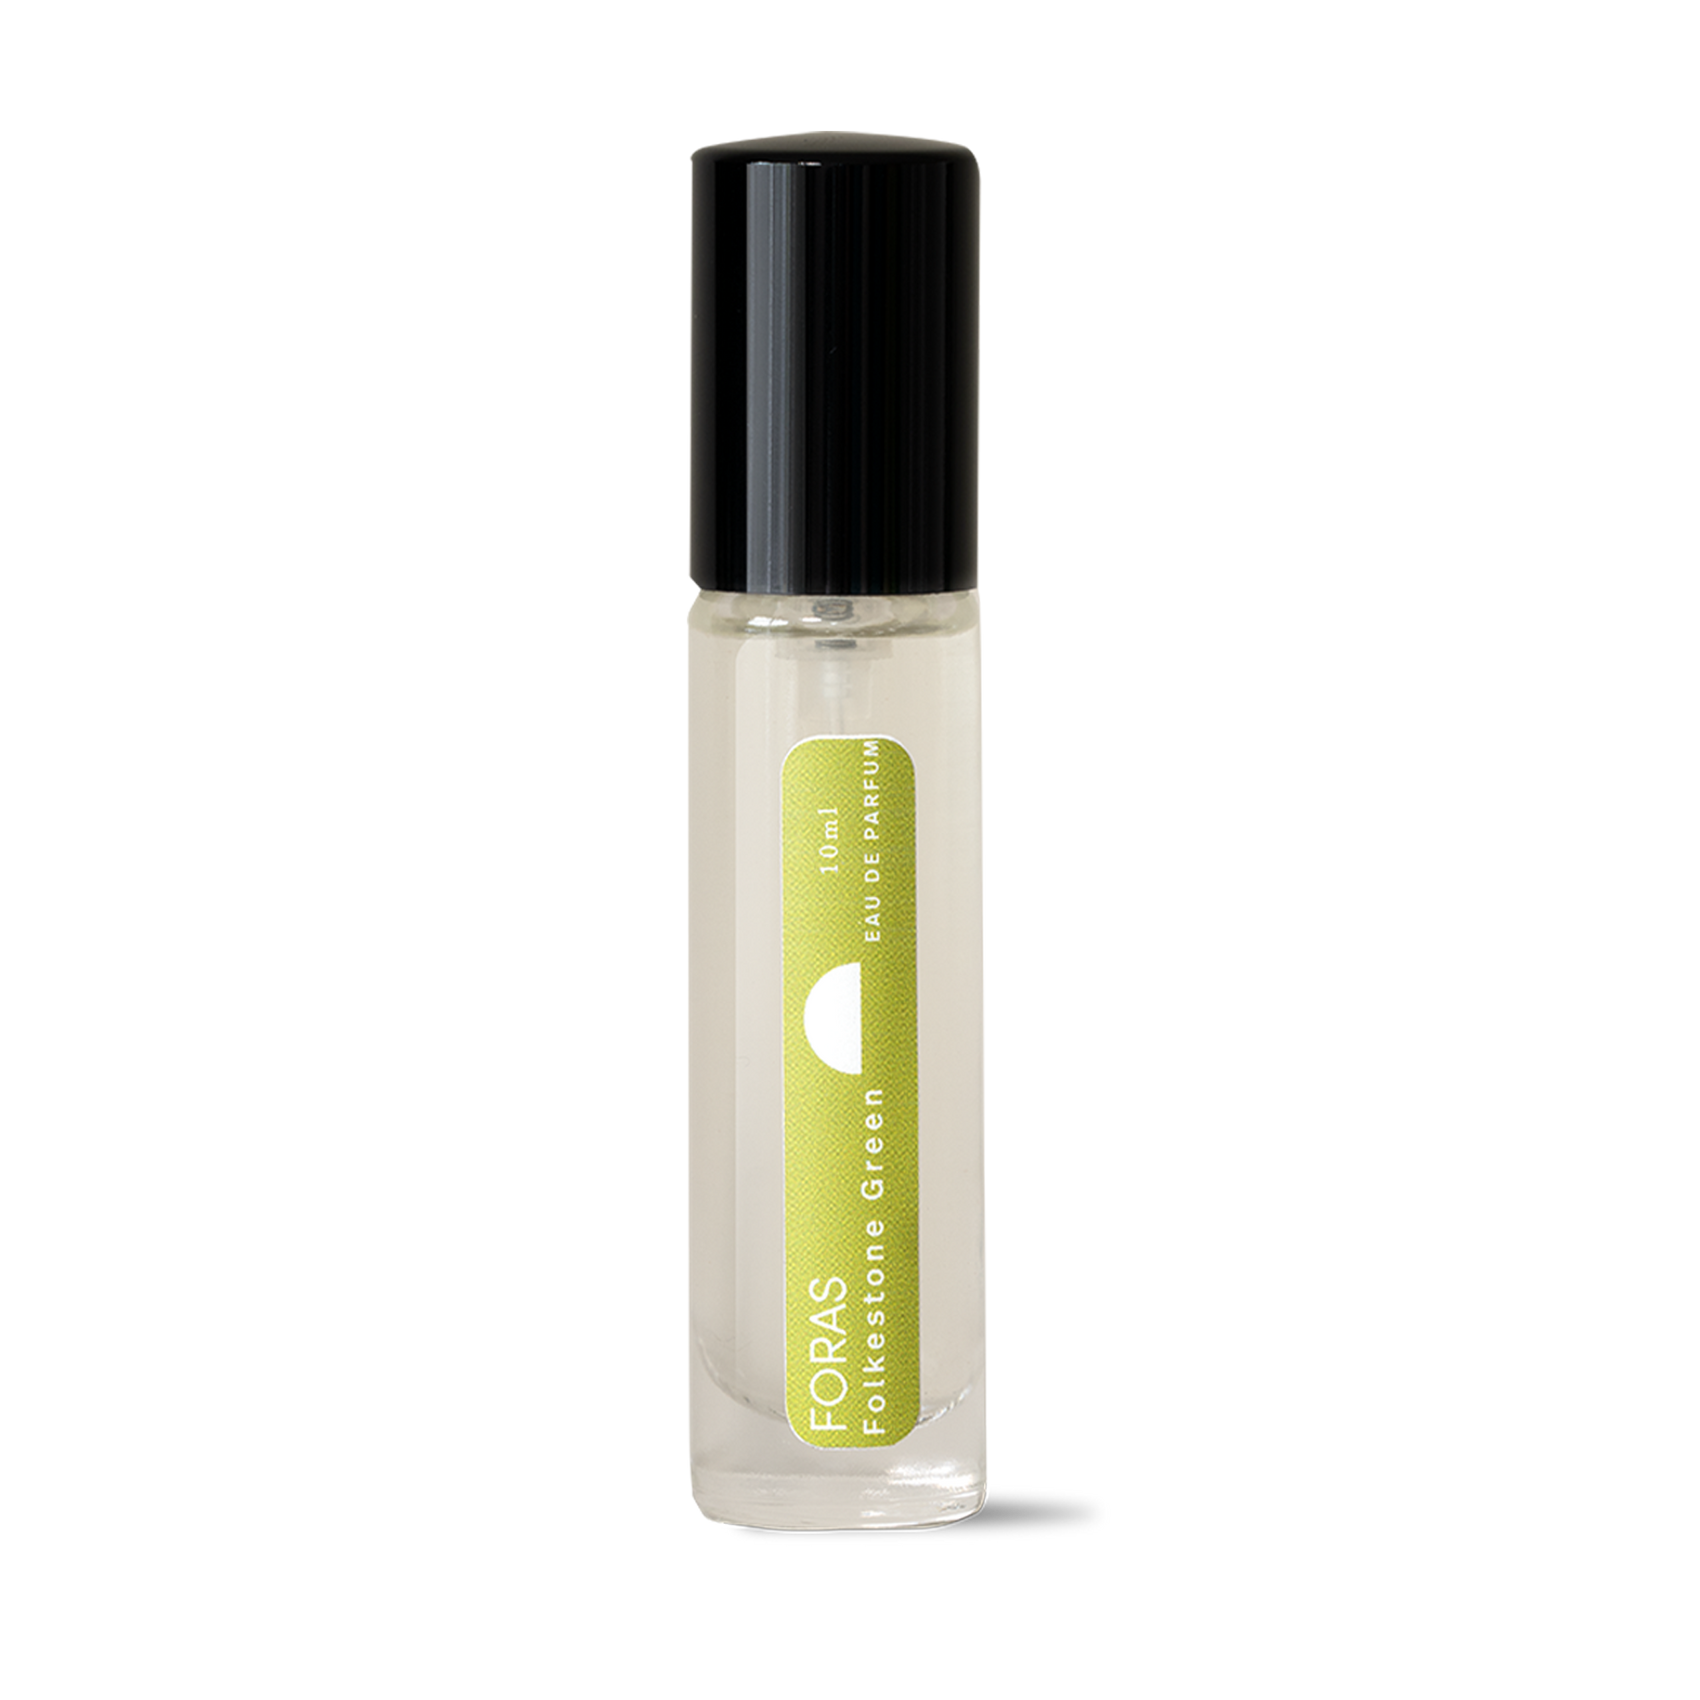 Folkestone Green fragrance - 10ml bottle